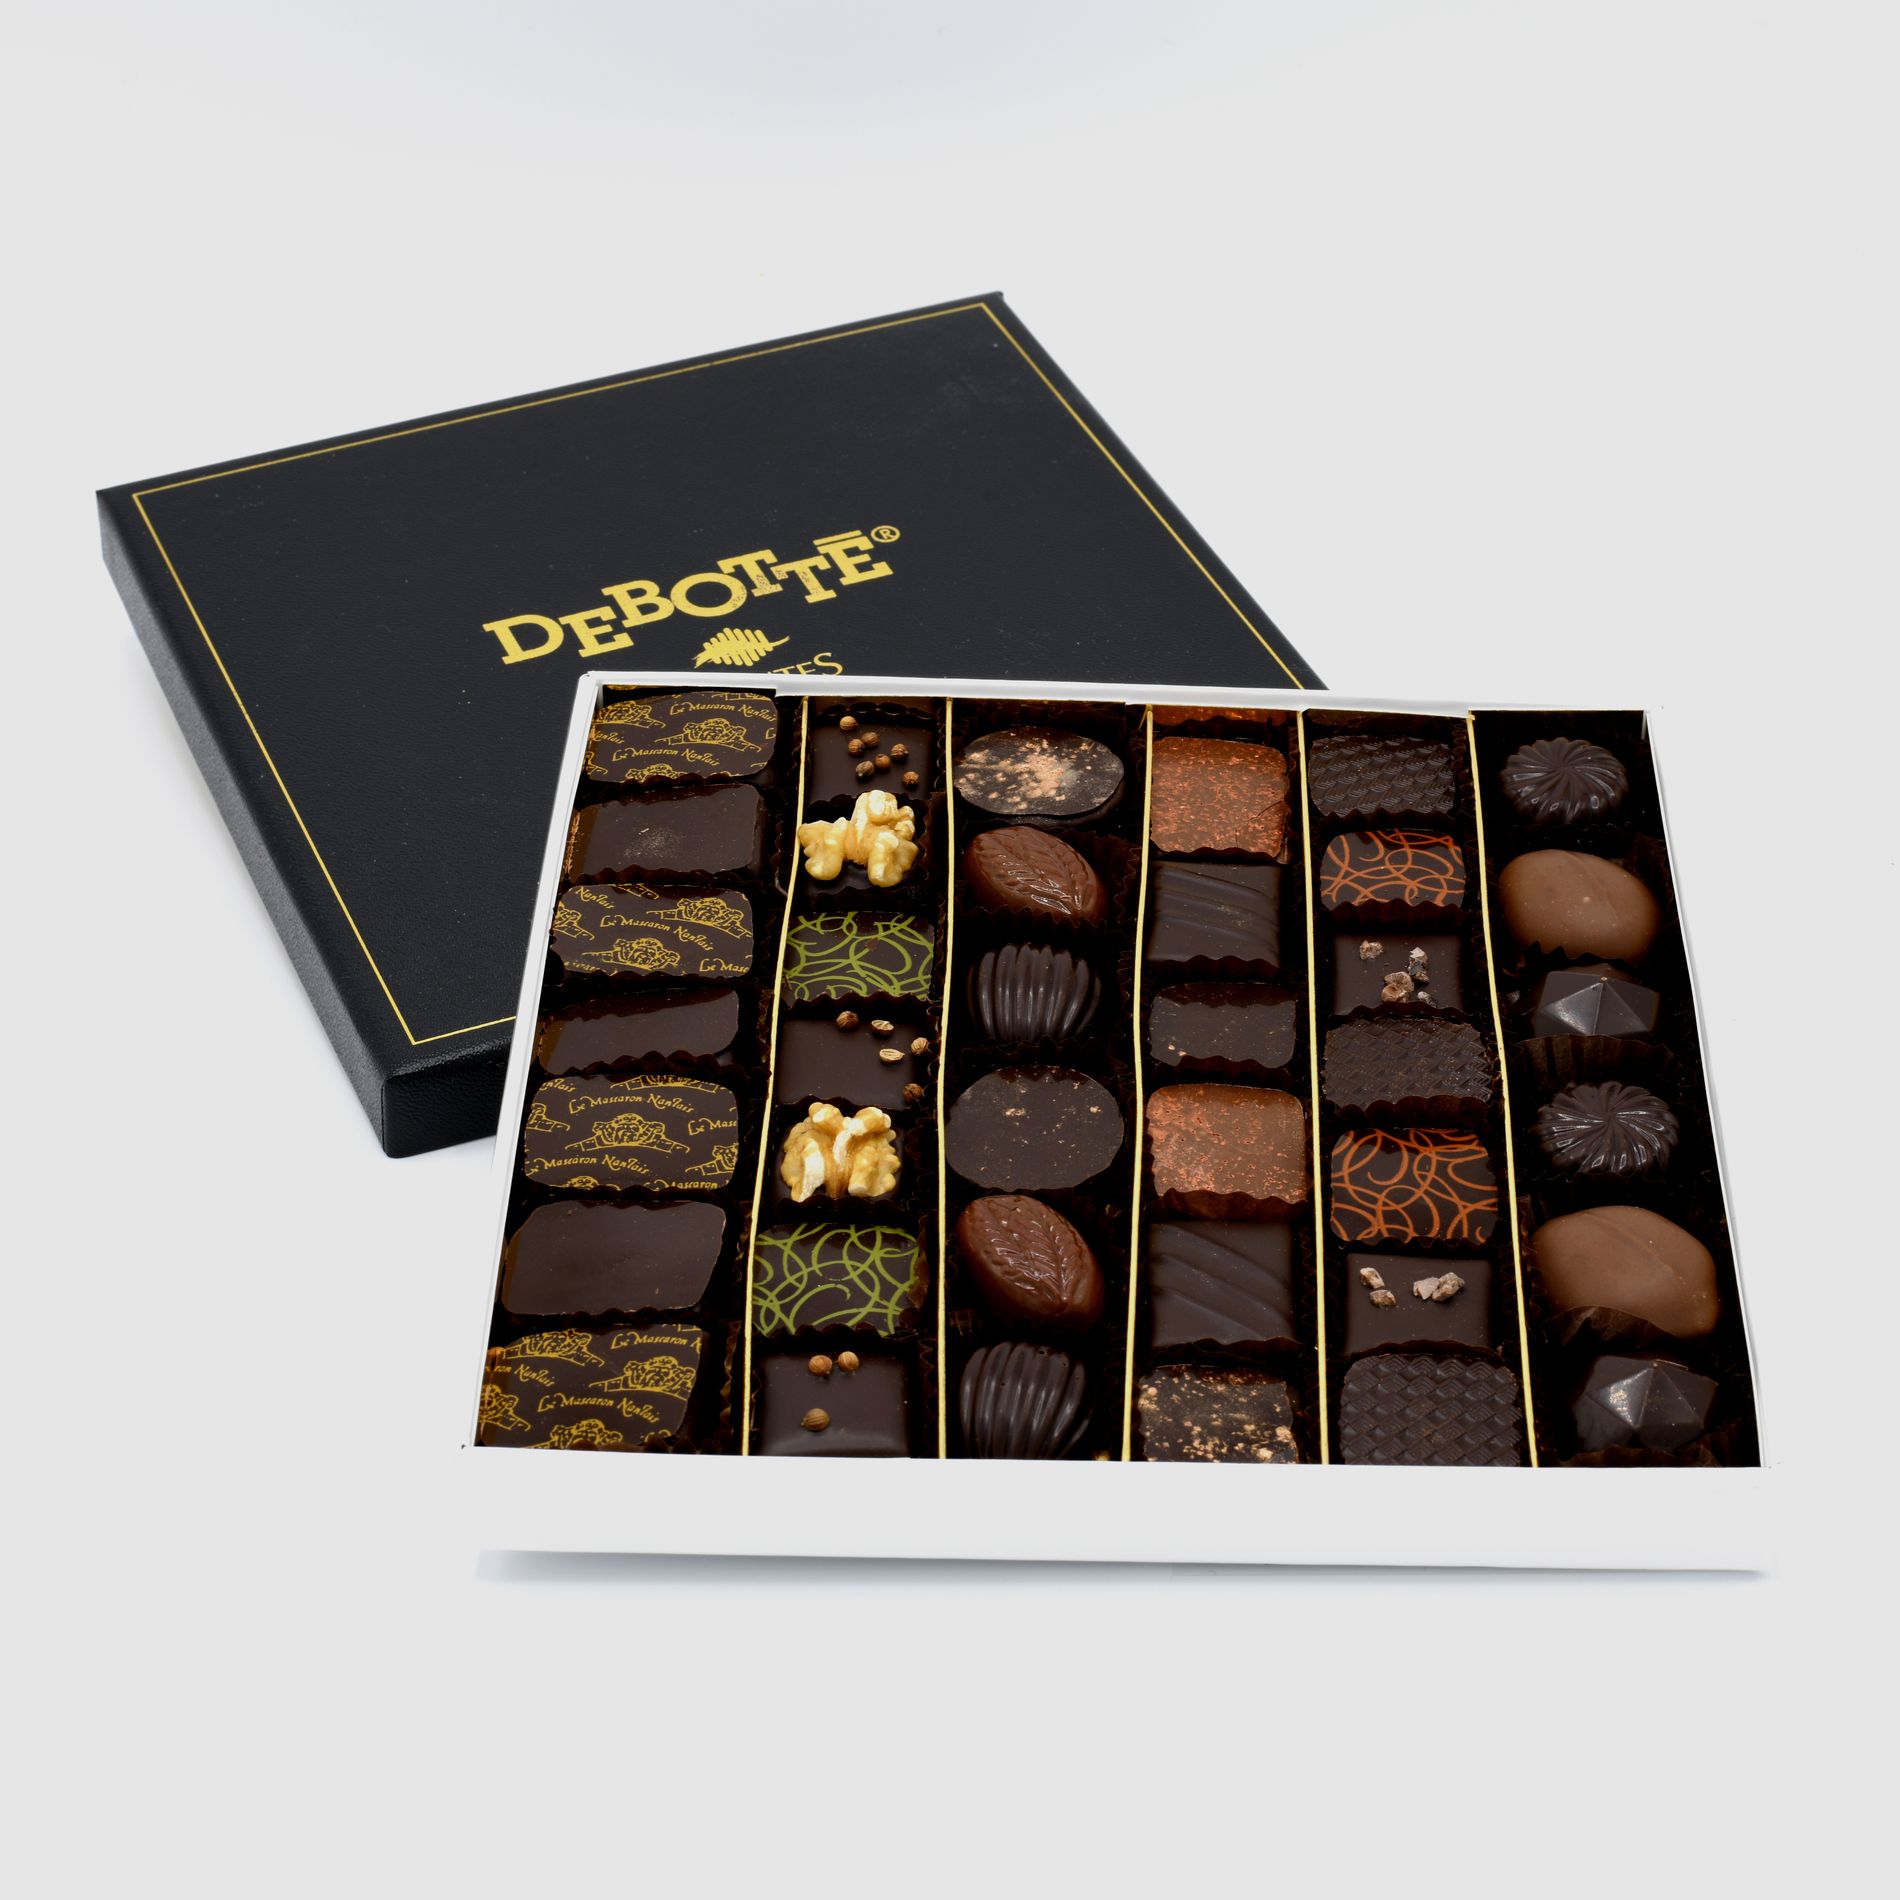 Boite de chocolats La Carrée, le coffret cadeau chocolat par Debotté